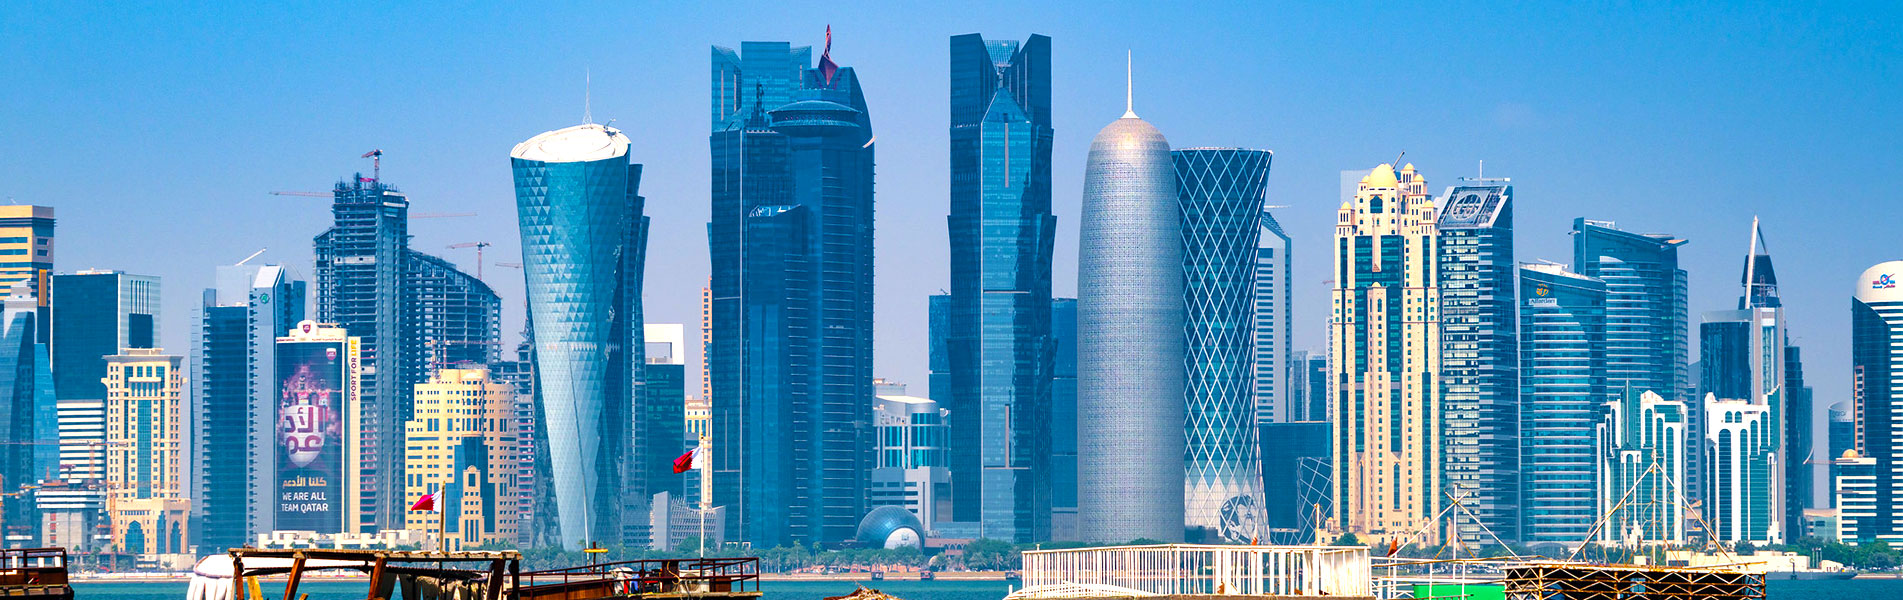 Skyscraper in Doha